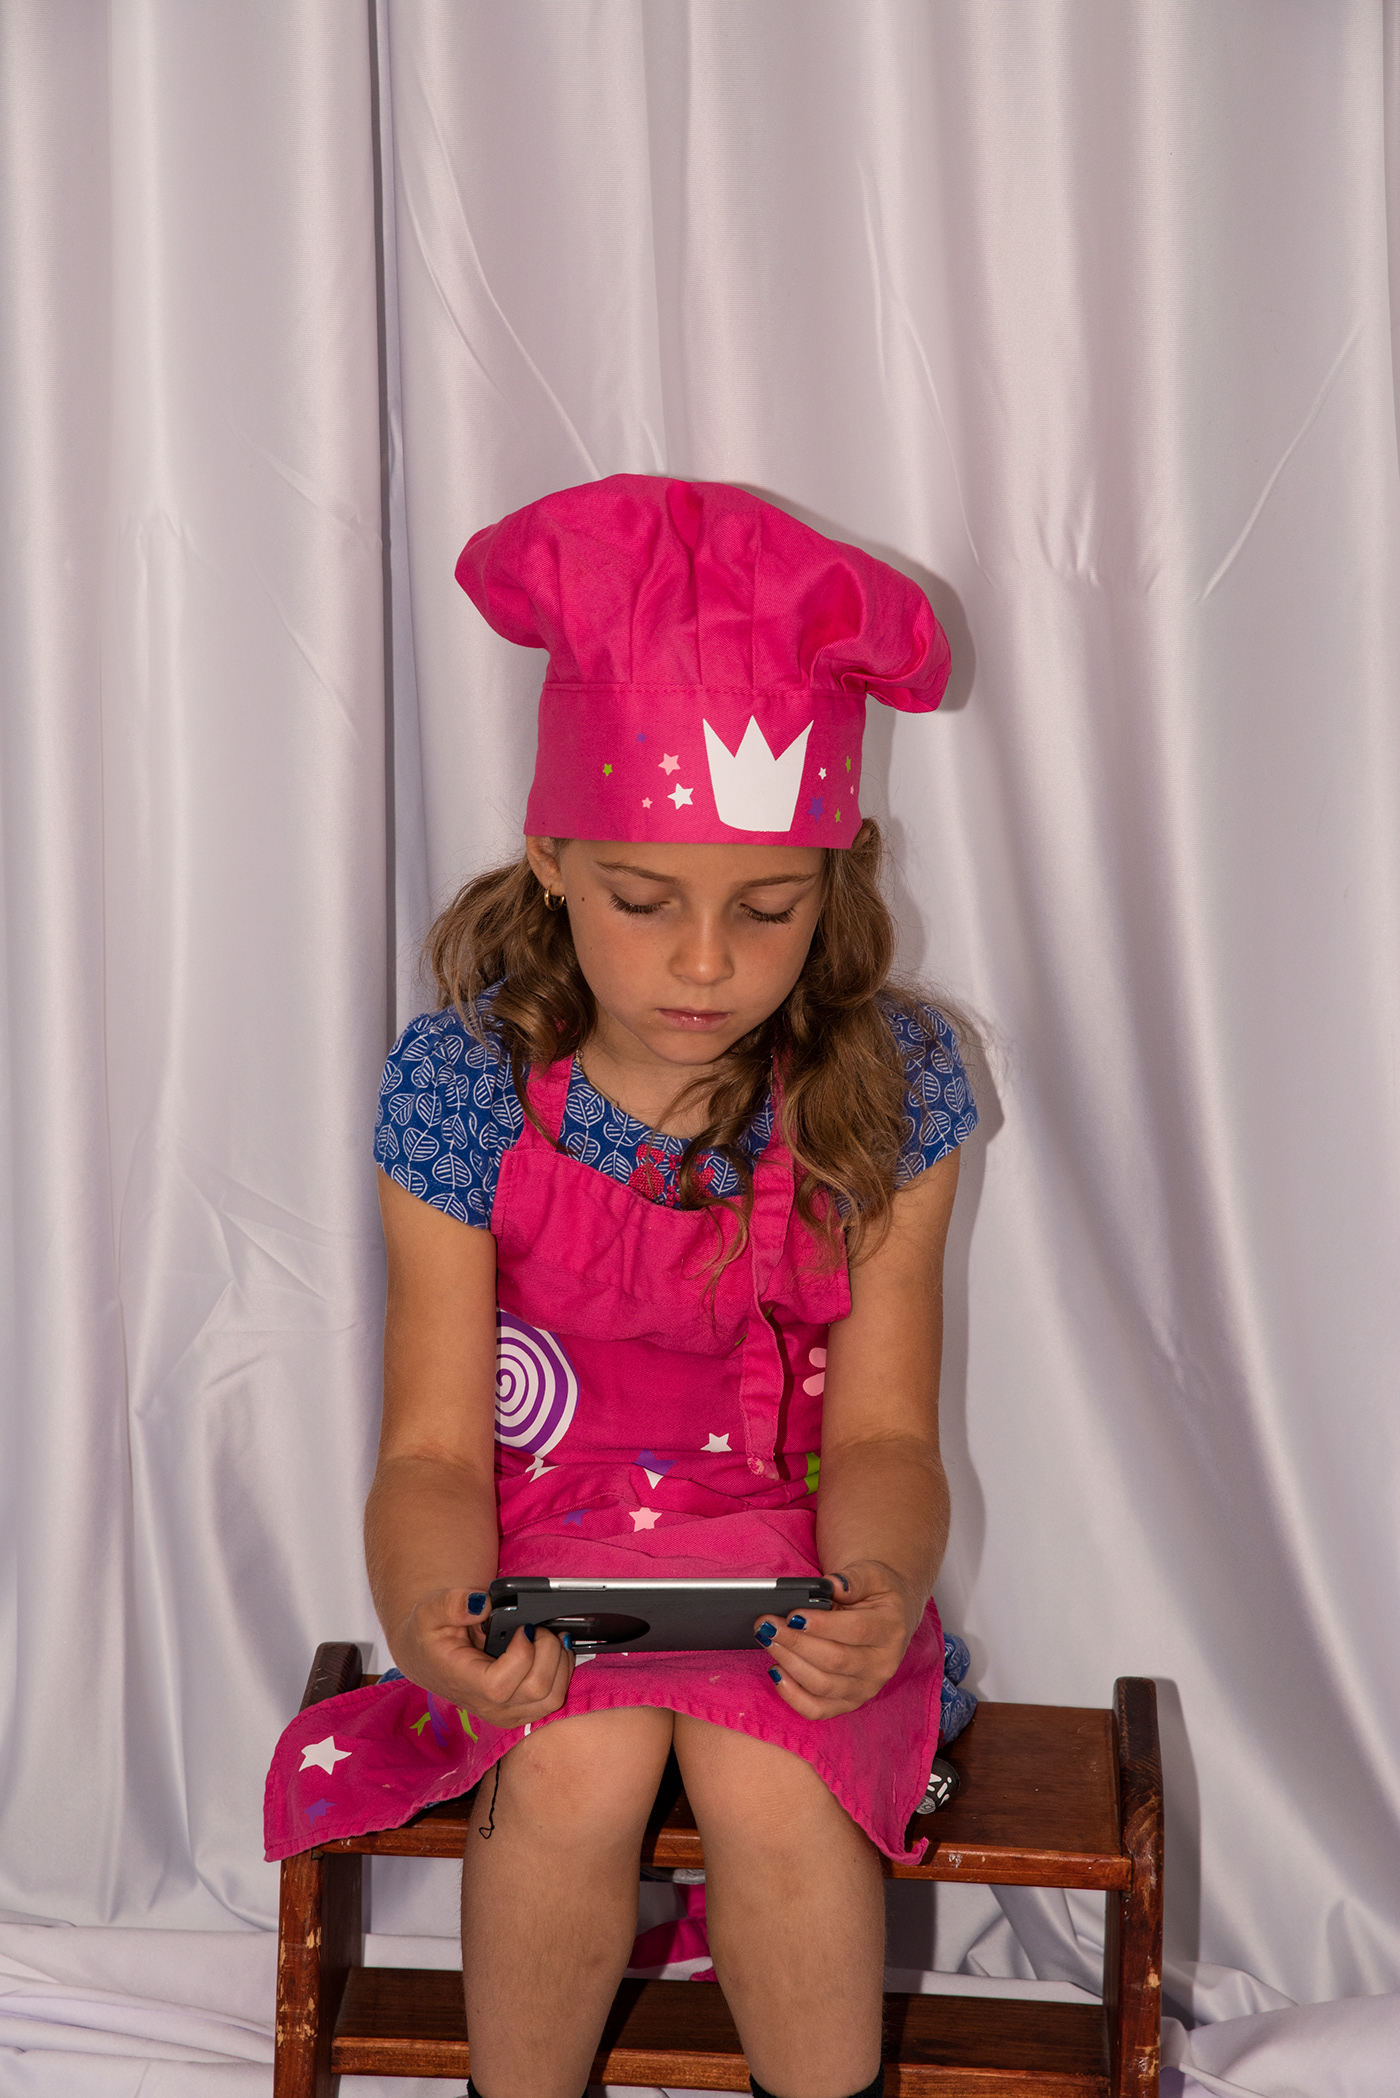 Aryanne cellulaire phone cook enfant Fille fillette jeu cusinière cuisine